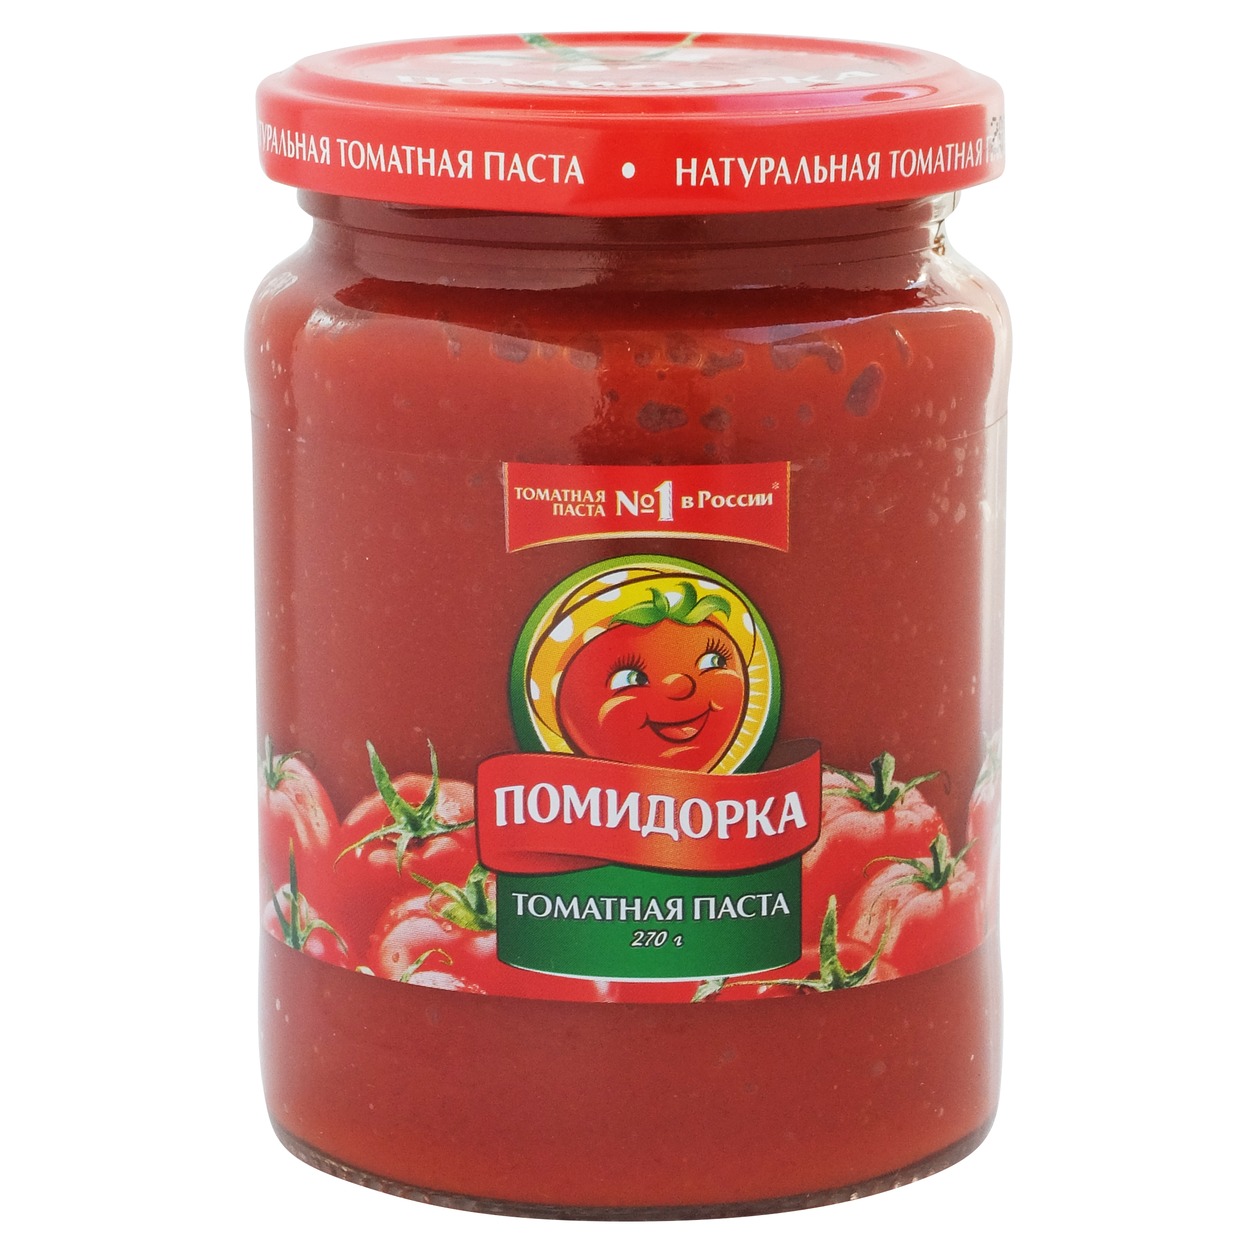 ПОМИДОРКА Паста томатная паст.ст/б 250мл